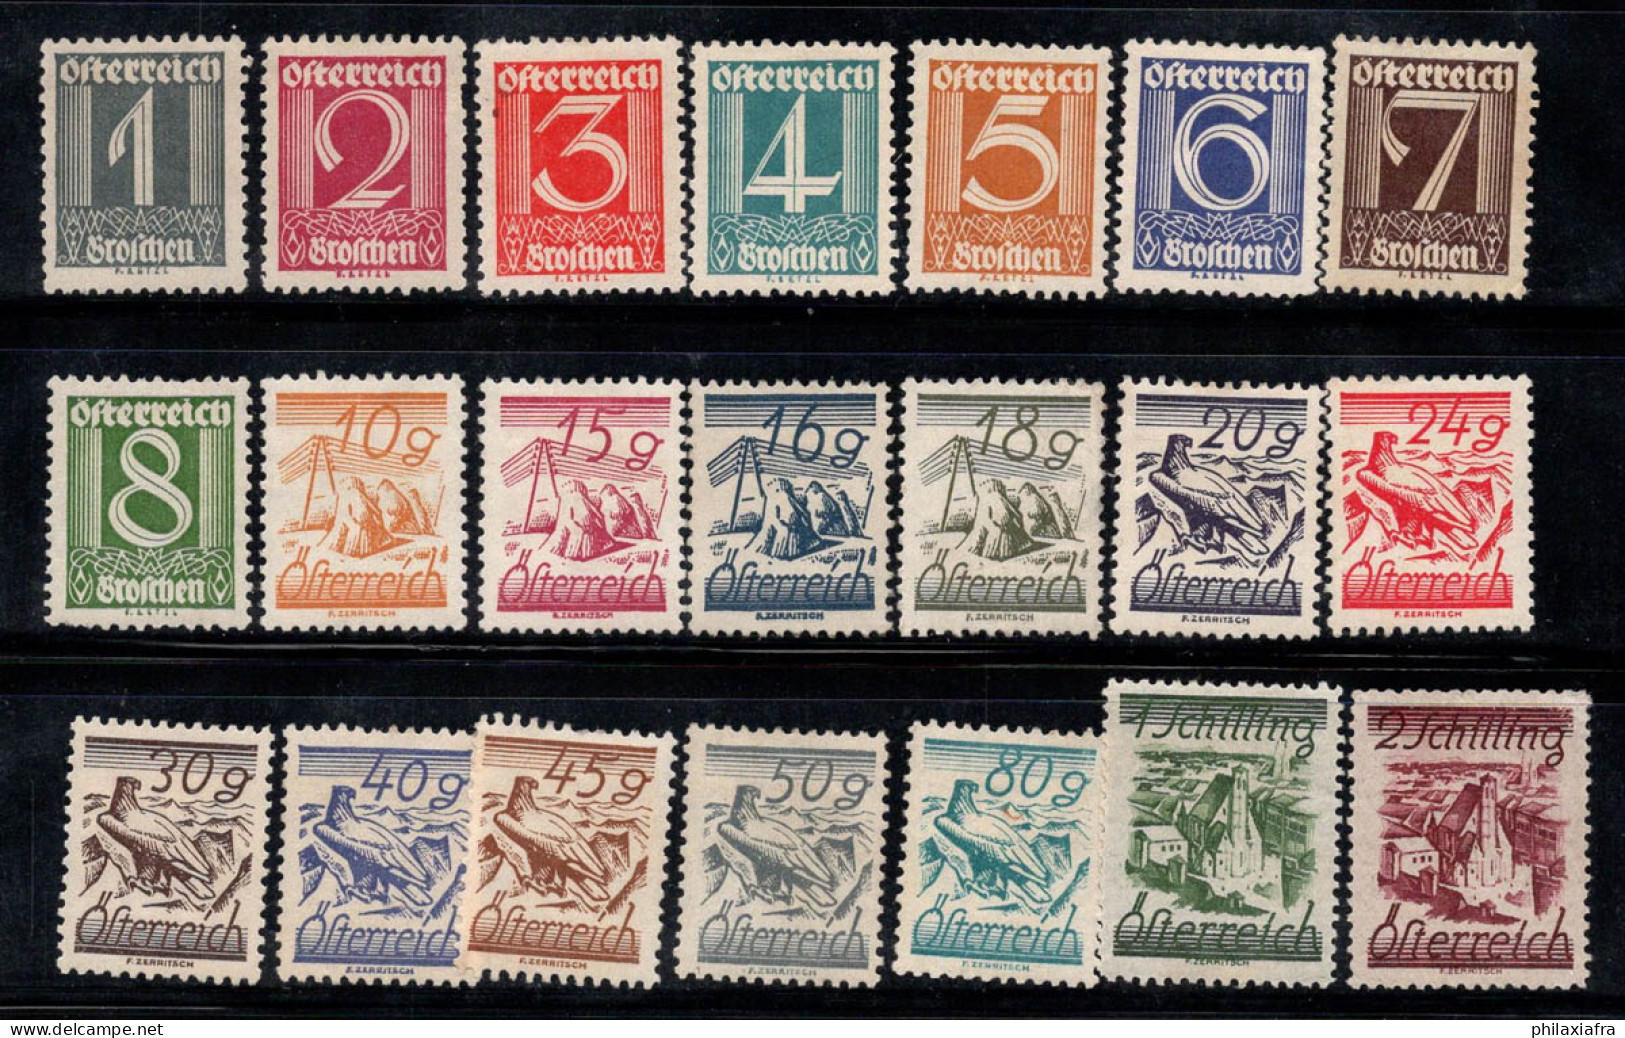 Autriche 1925 Mi. 447-467 Neuf * MH 60% Nombres, Paysages, Aigle - Unused Stamps